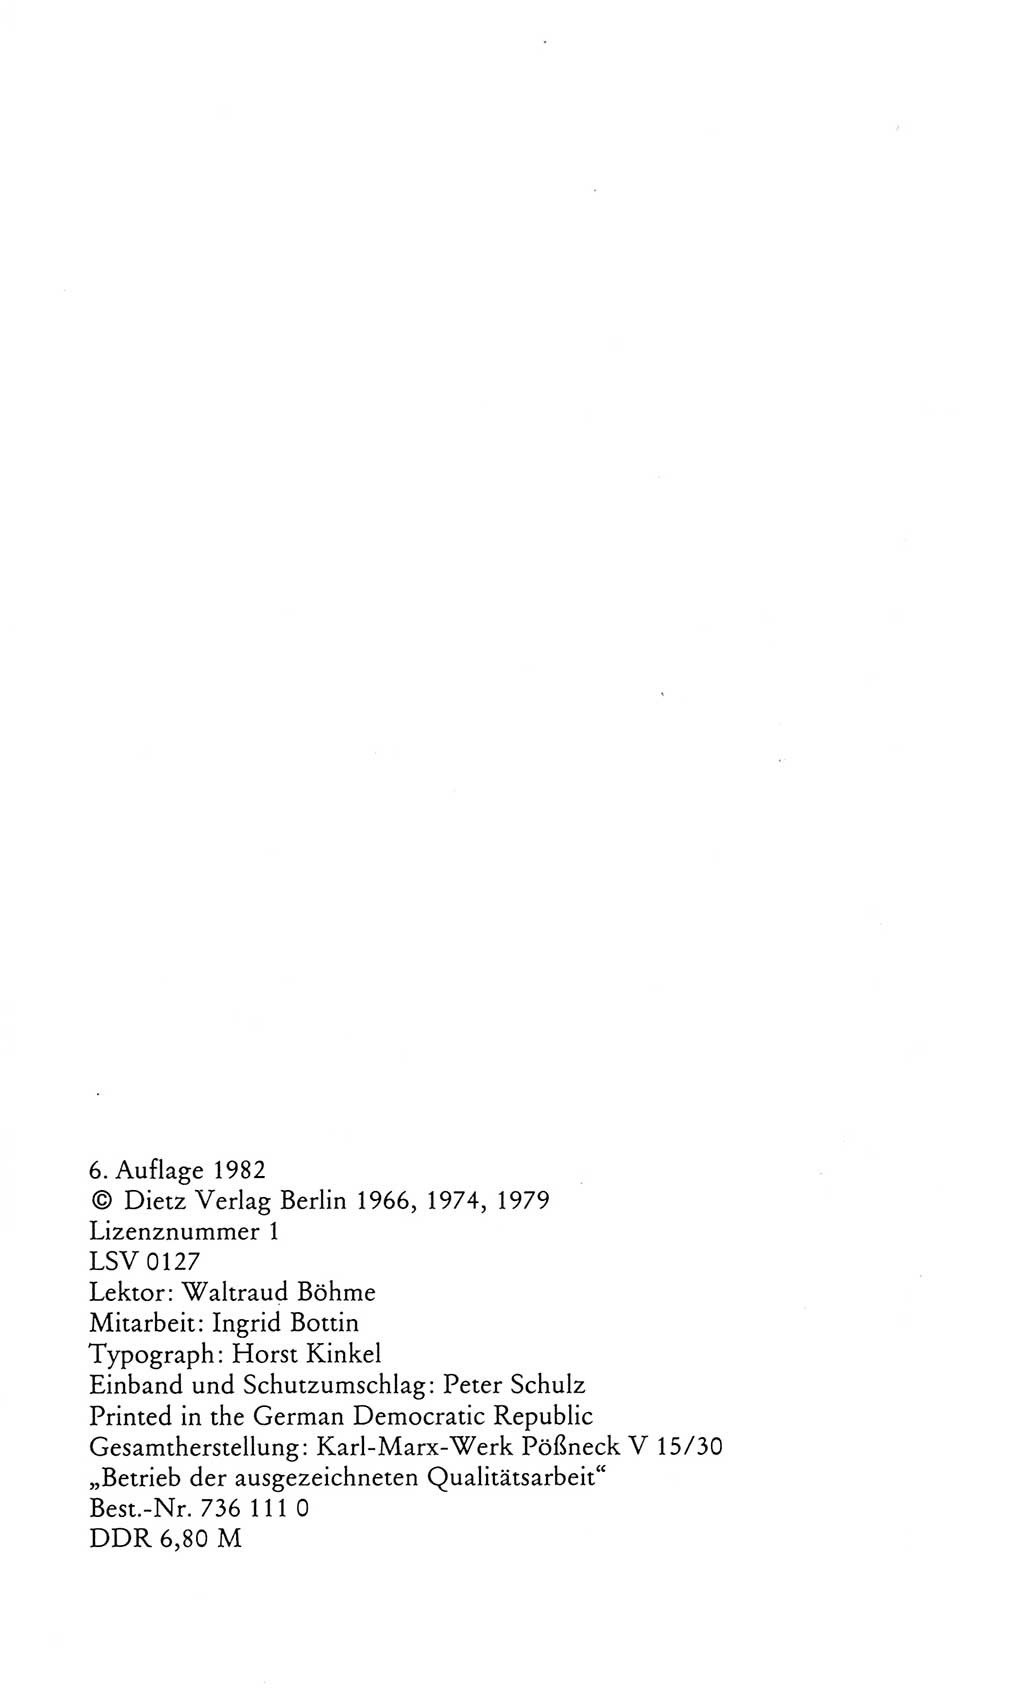 Kleines Wörterbuch der marxistisch-leninistischen Philosophie [Deutsche Demokratische Republik (DDR)] 1982, Seite 4 (Kl. Wb. ML Phil. DDR 1982, S. 4)